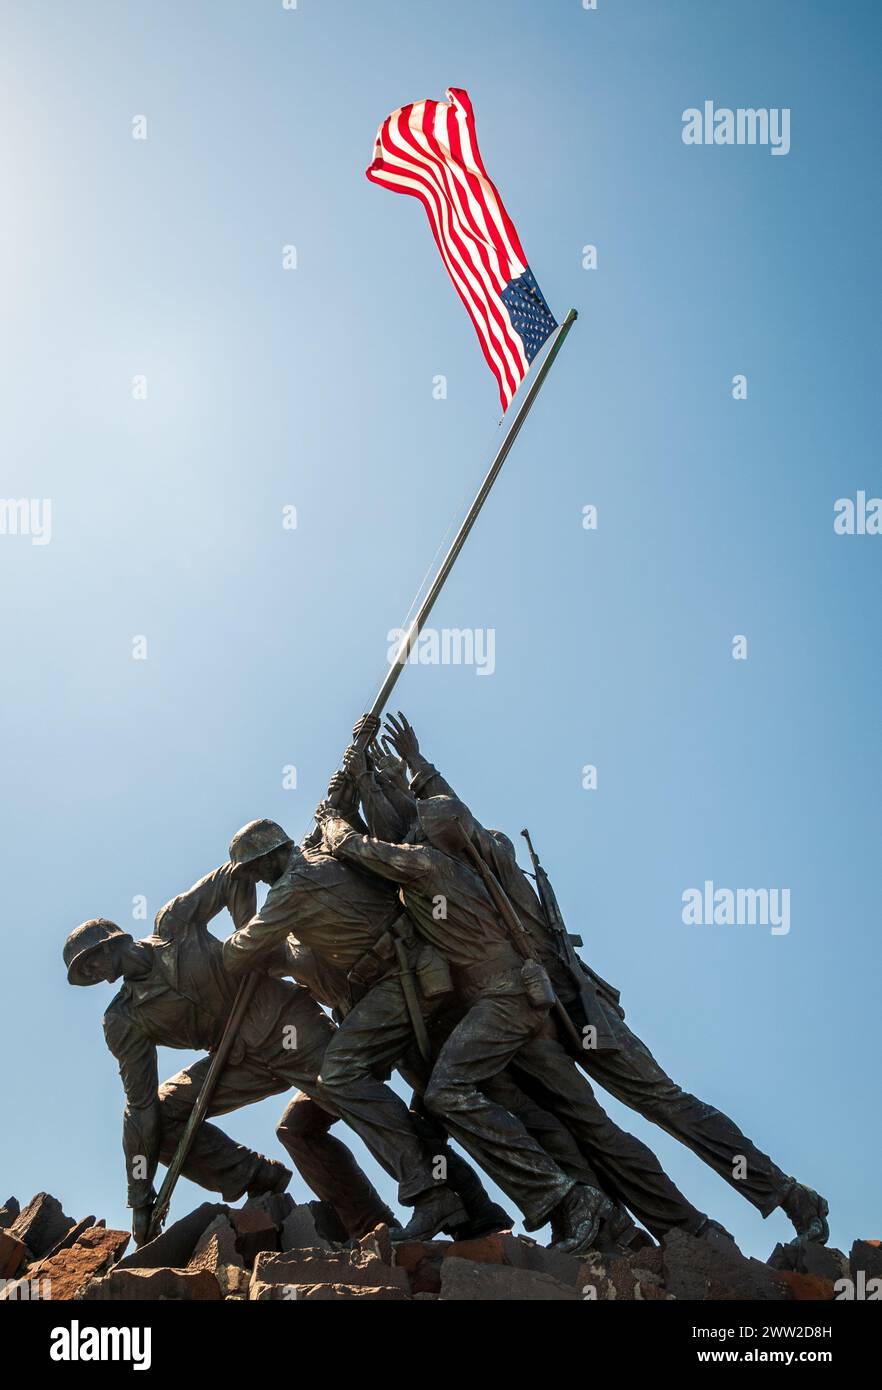 Le mémorial de guerre du corps des Marines des États-Unis situé dans le comté d'Arlington, en Virginie, est une statue réaliste du deuxième lever du drapeau sur Iwo Jima, aux États-Unis Banque D'Images